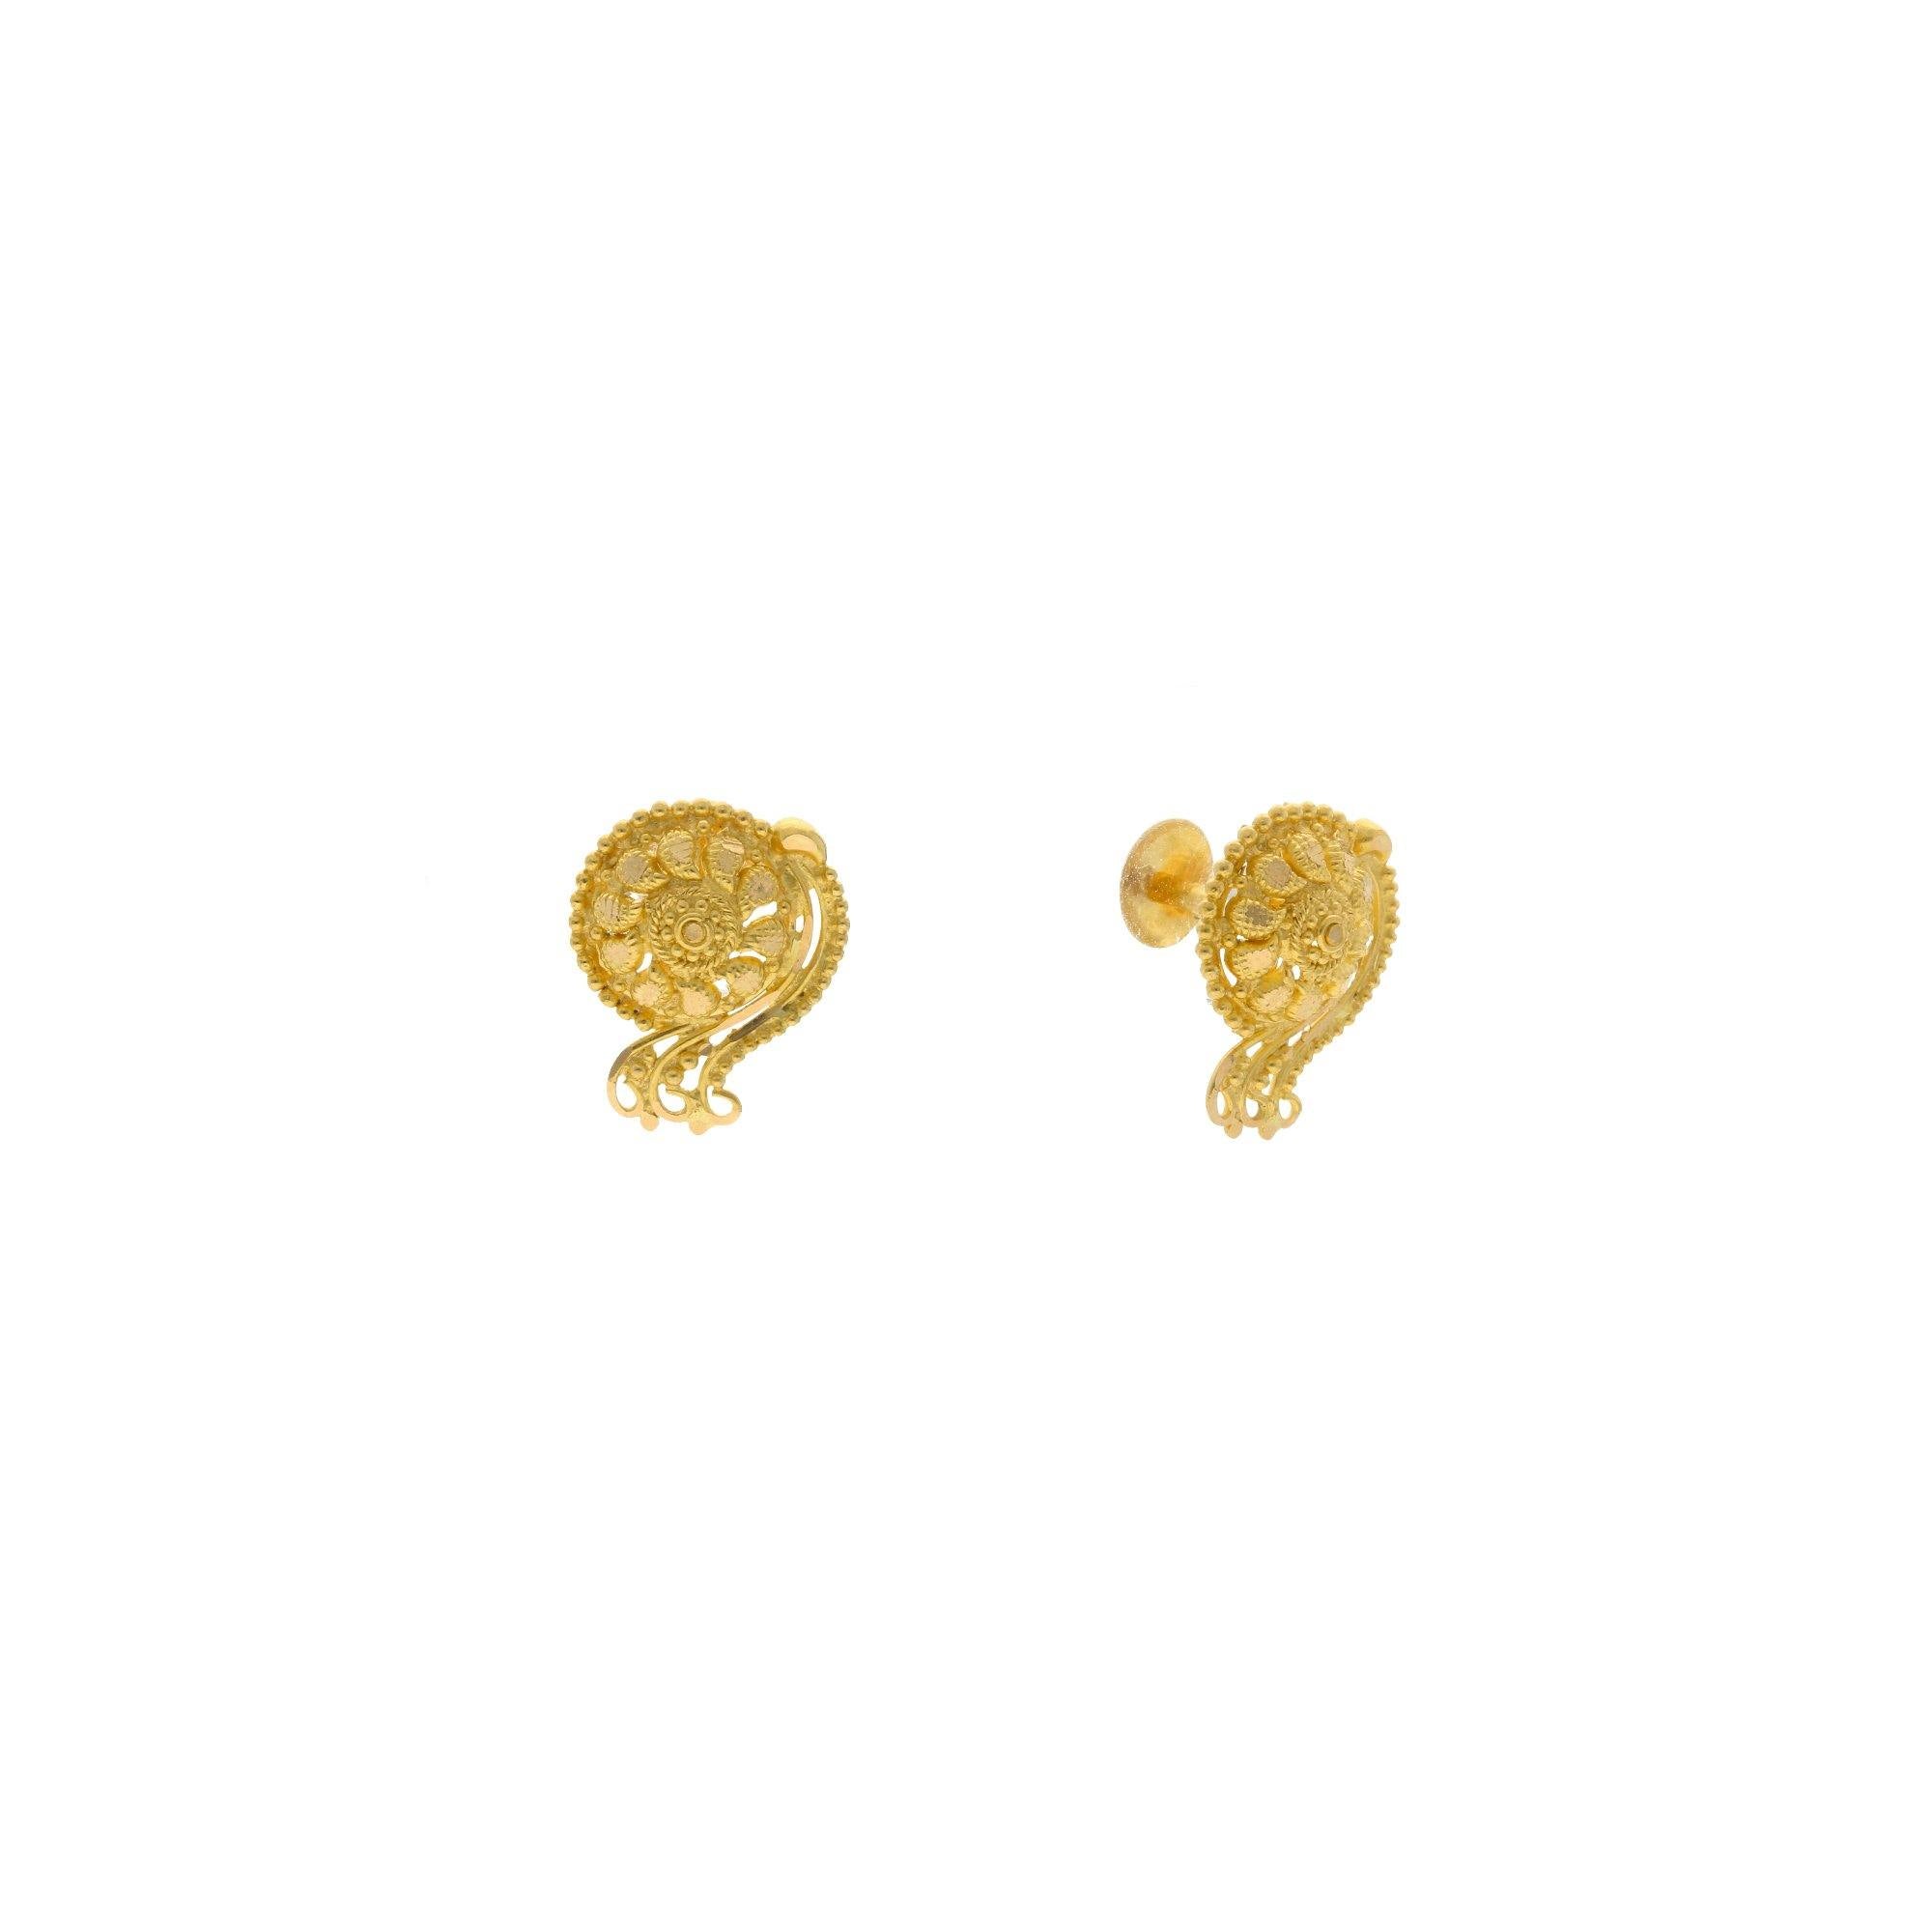 3 Gram Gold Earrings New Design Part-2 | Gold Earrings 3 Gram With Price -  YouTube